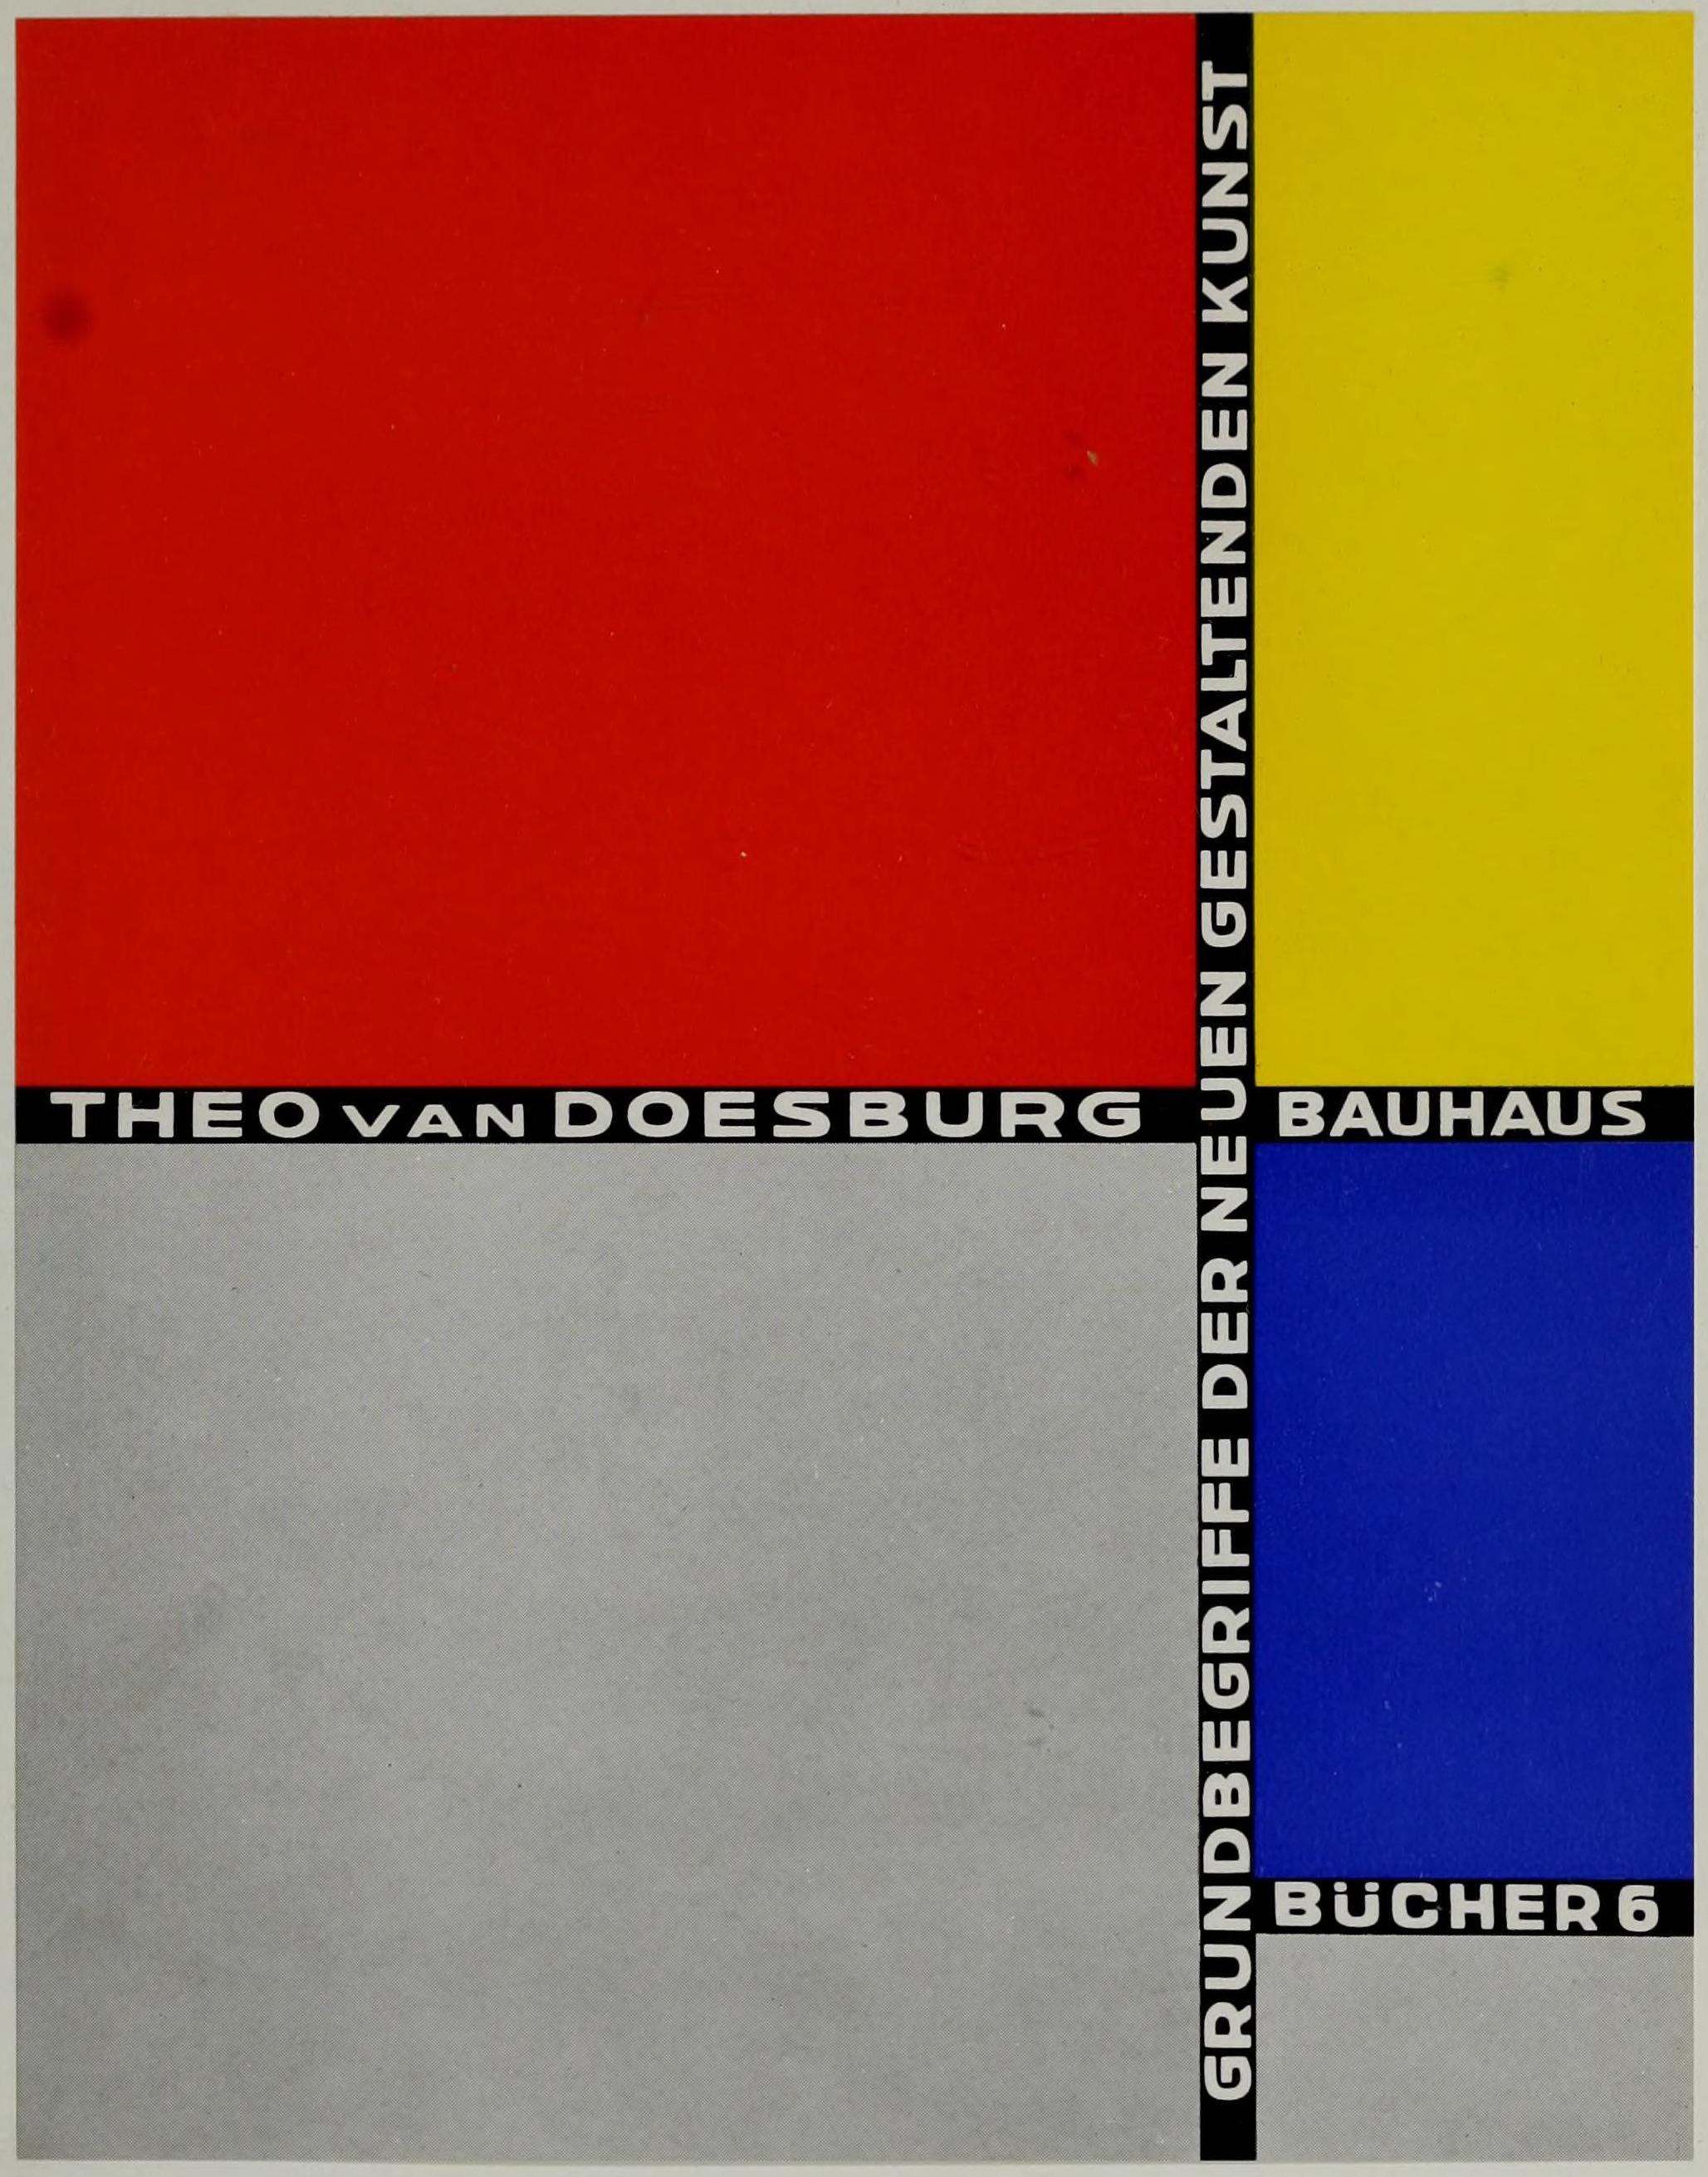 VOLUME 6 IN THE BAUHAUSBÜCHER SERIES IN 1925